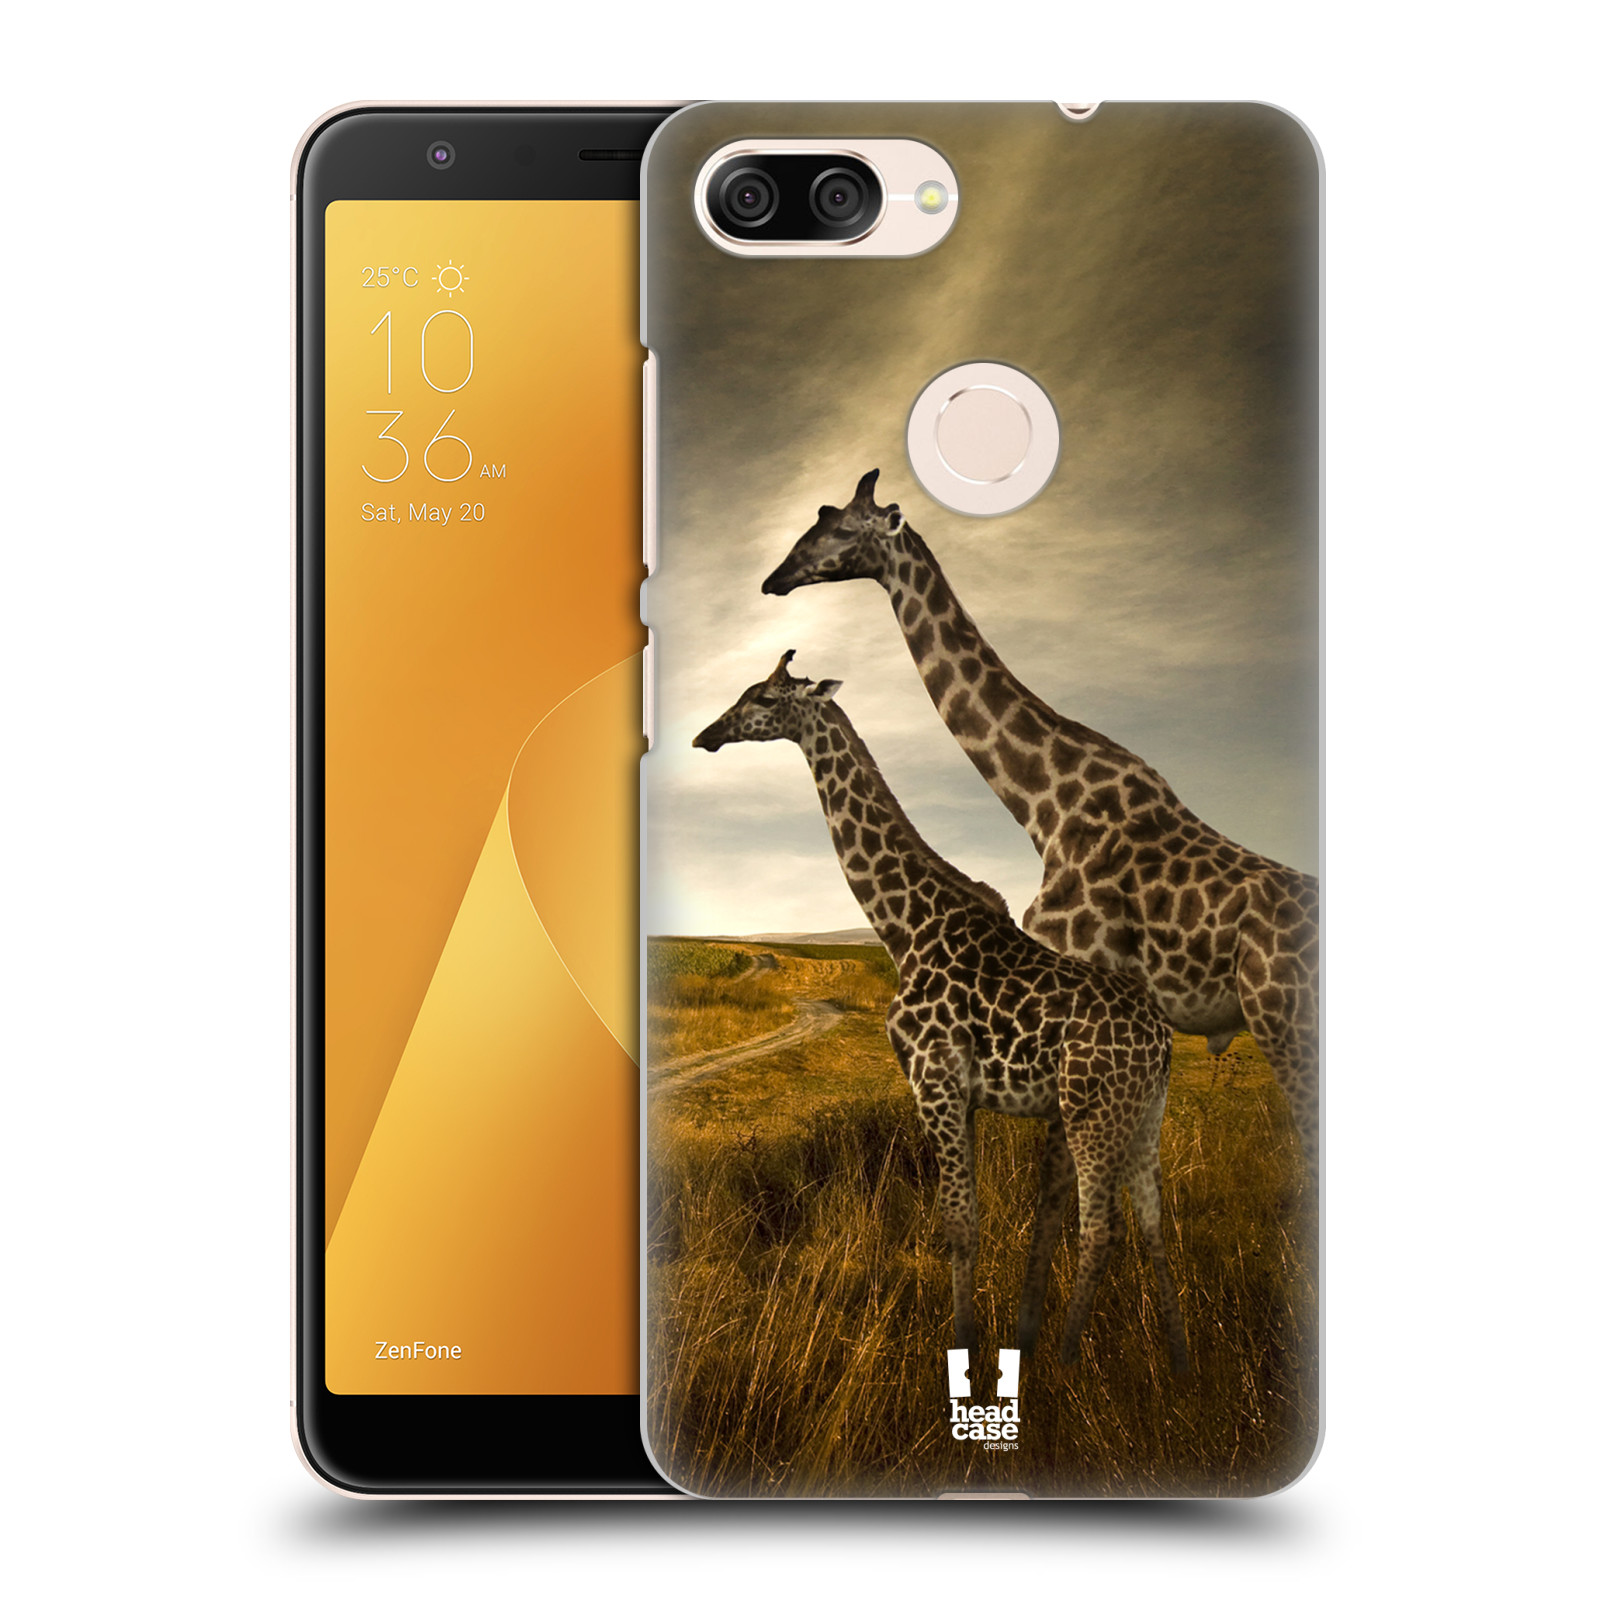 Zadní obal pro mobil Asus Zenfone Max Plus (M1) - HEAD CASE - Svět zvířat žirafy